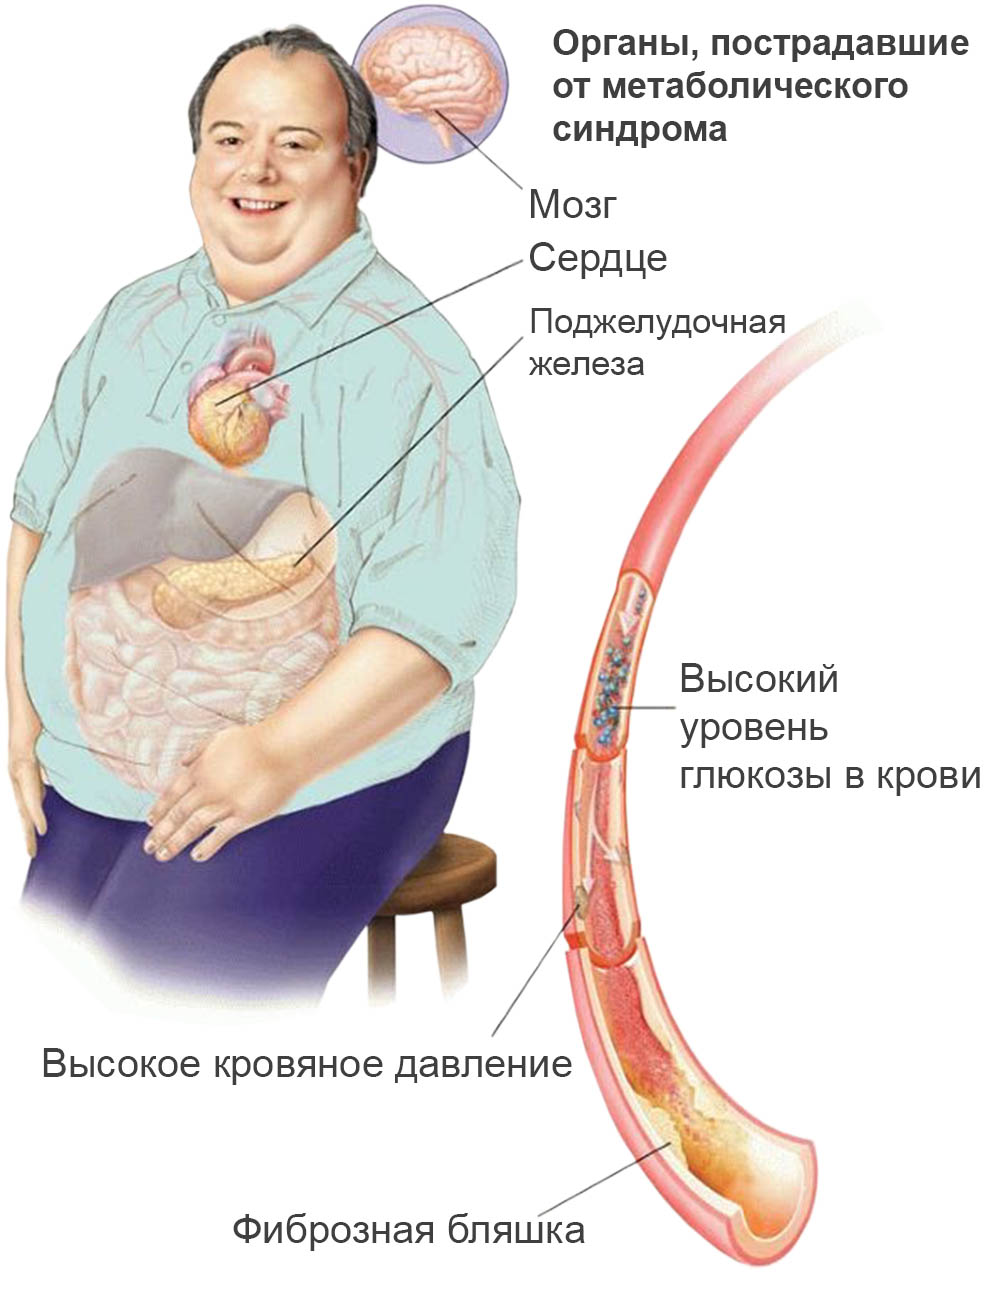 Органы-мишени при метаболическом синдроме